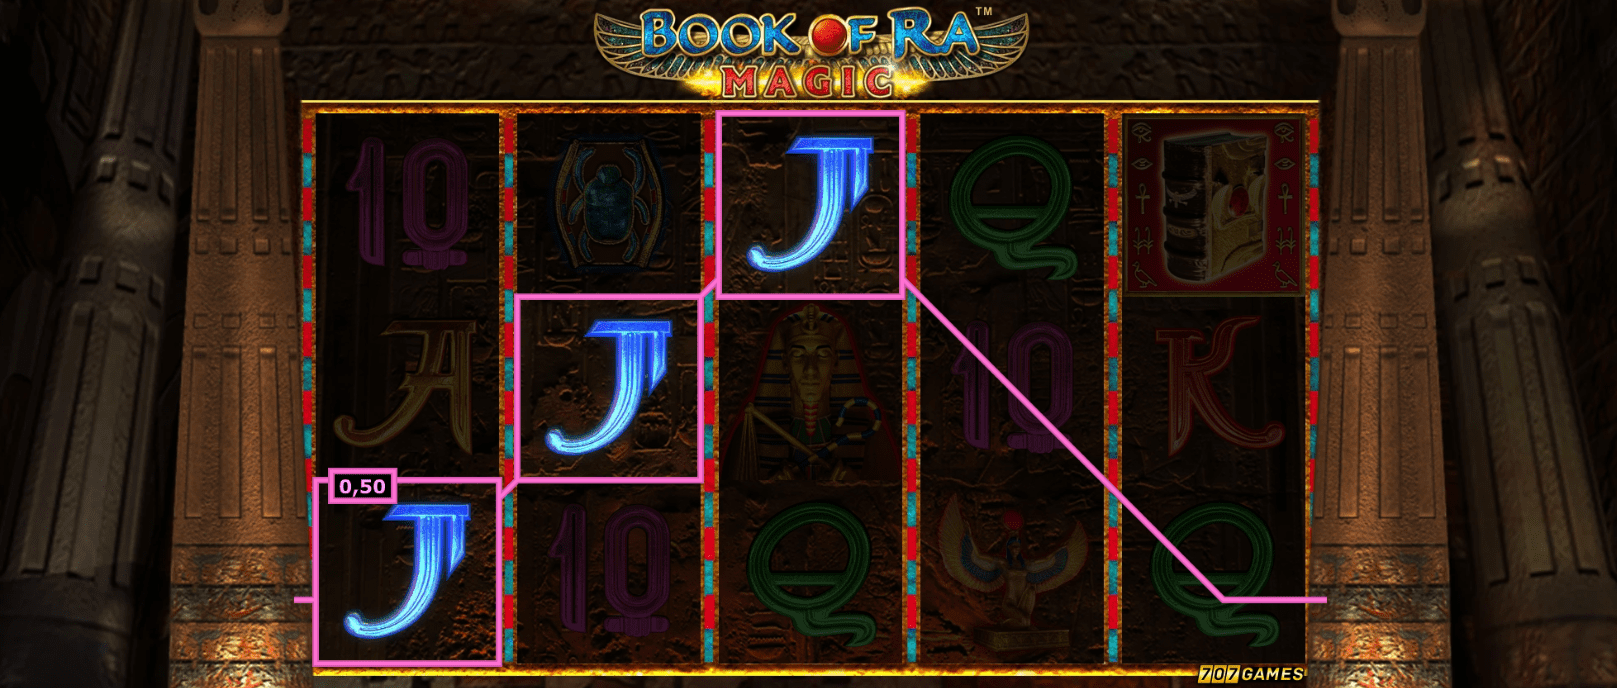 Book of ra magic slot